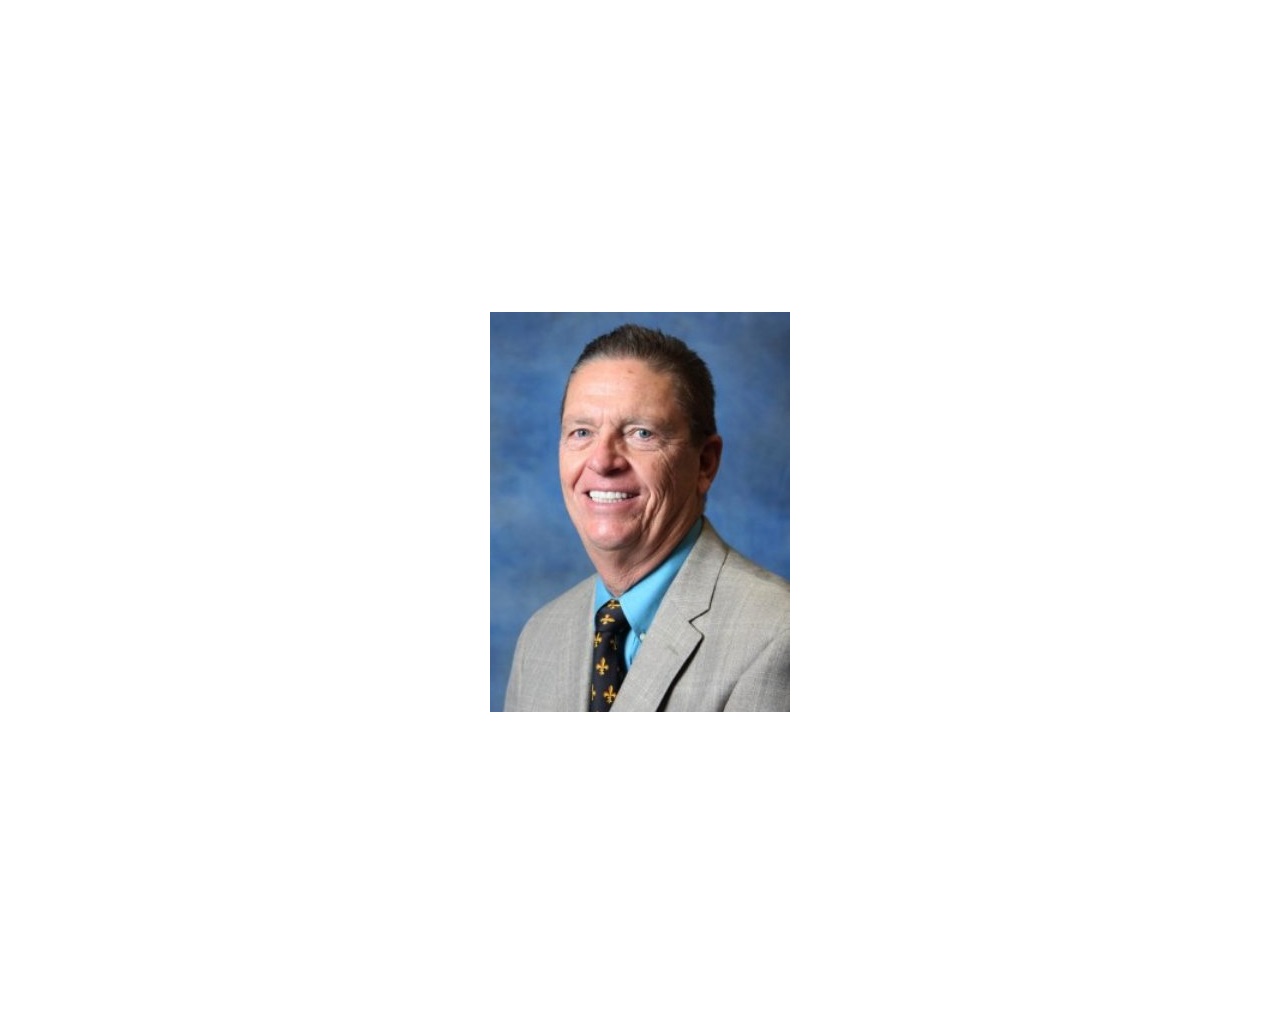 Helmut Mundt, Program Administrator, HBA Builders Risk; New Orleans, LA